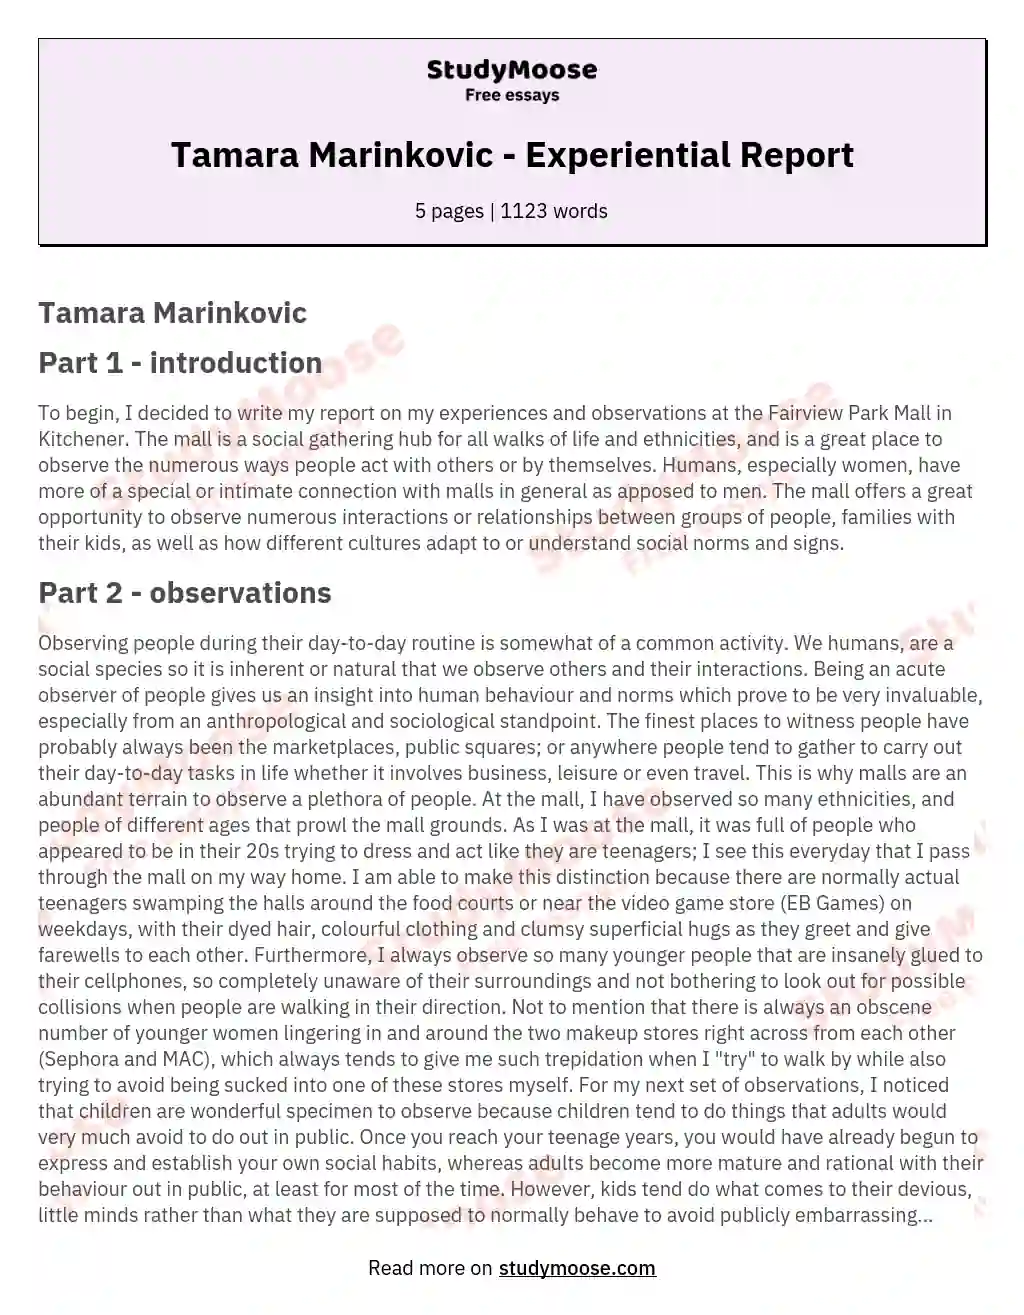 Tamara Marinkovic - Experiential Report essay